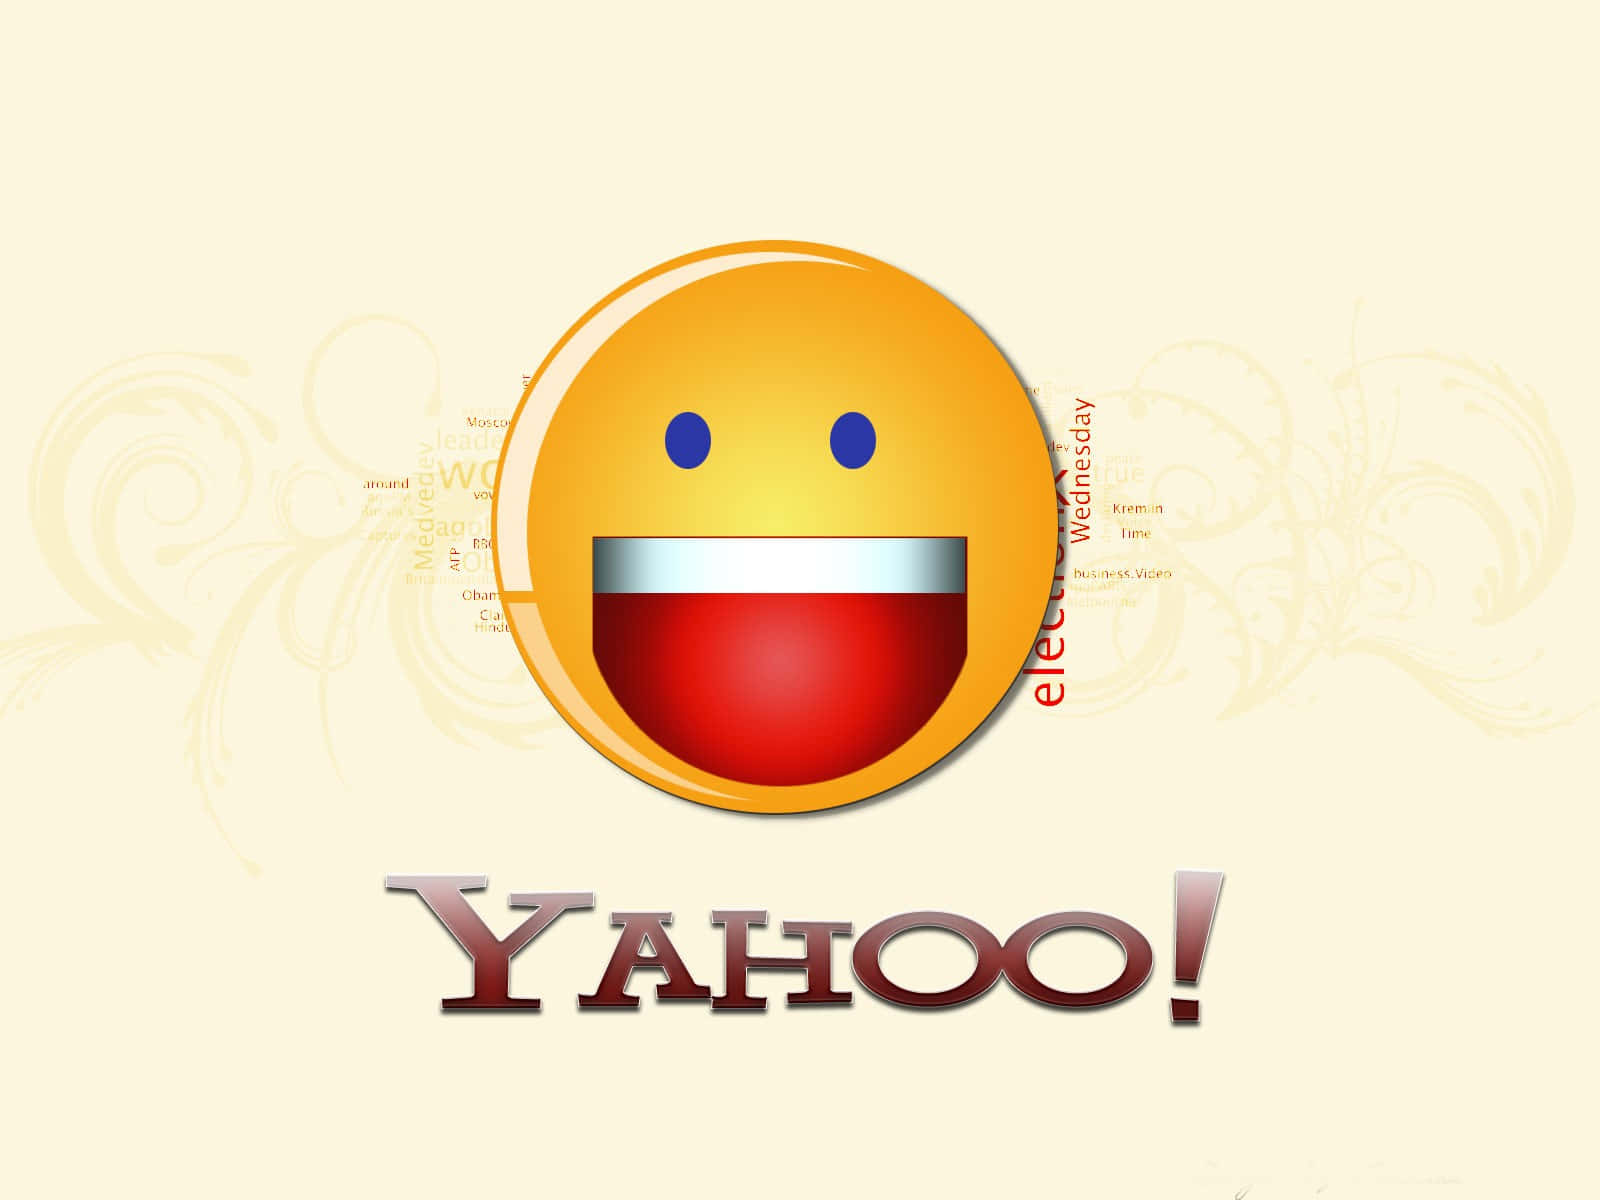 Givdig I Kast Med Din Rejse Med Yahoo!